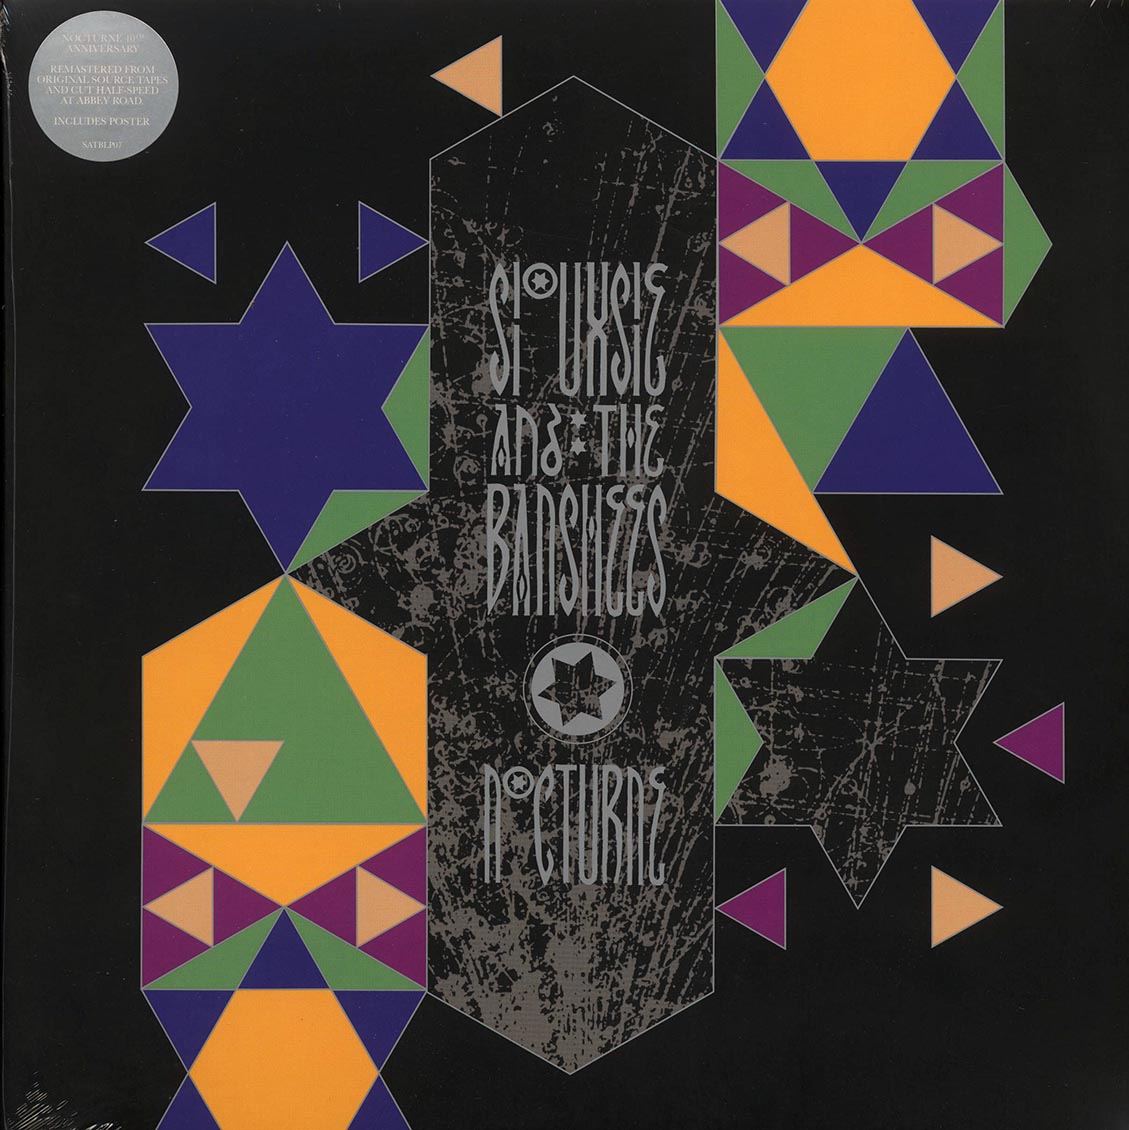 Siouxsie & The Banshees - Nocturne (RSD 2024) (ltd. ed.) (2xLP) - Vinyl LP